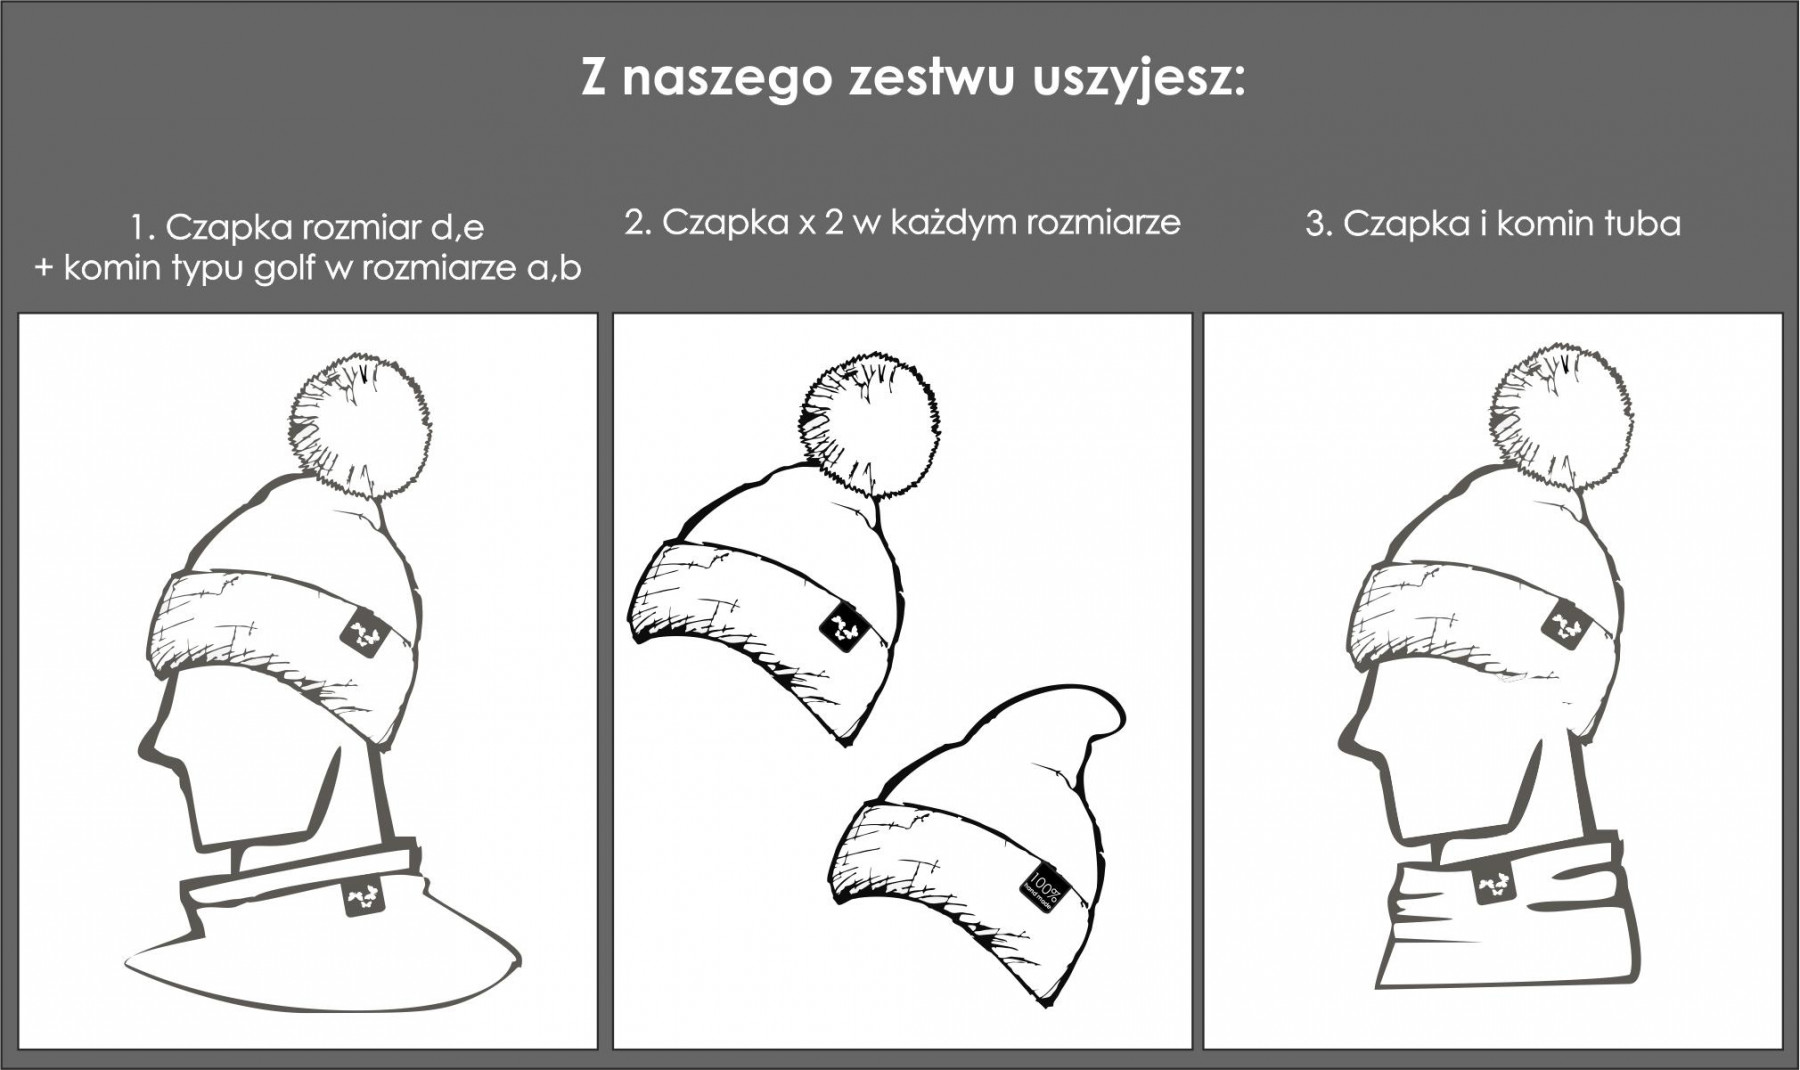 CZARNY / lis - Zestaw kreatywny do uszycia czapki i komina